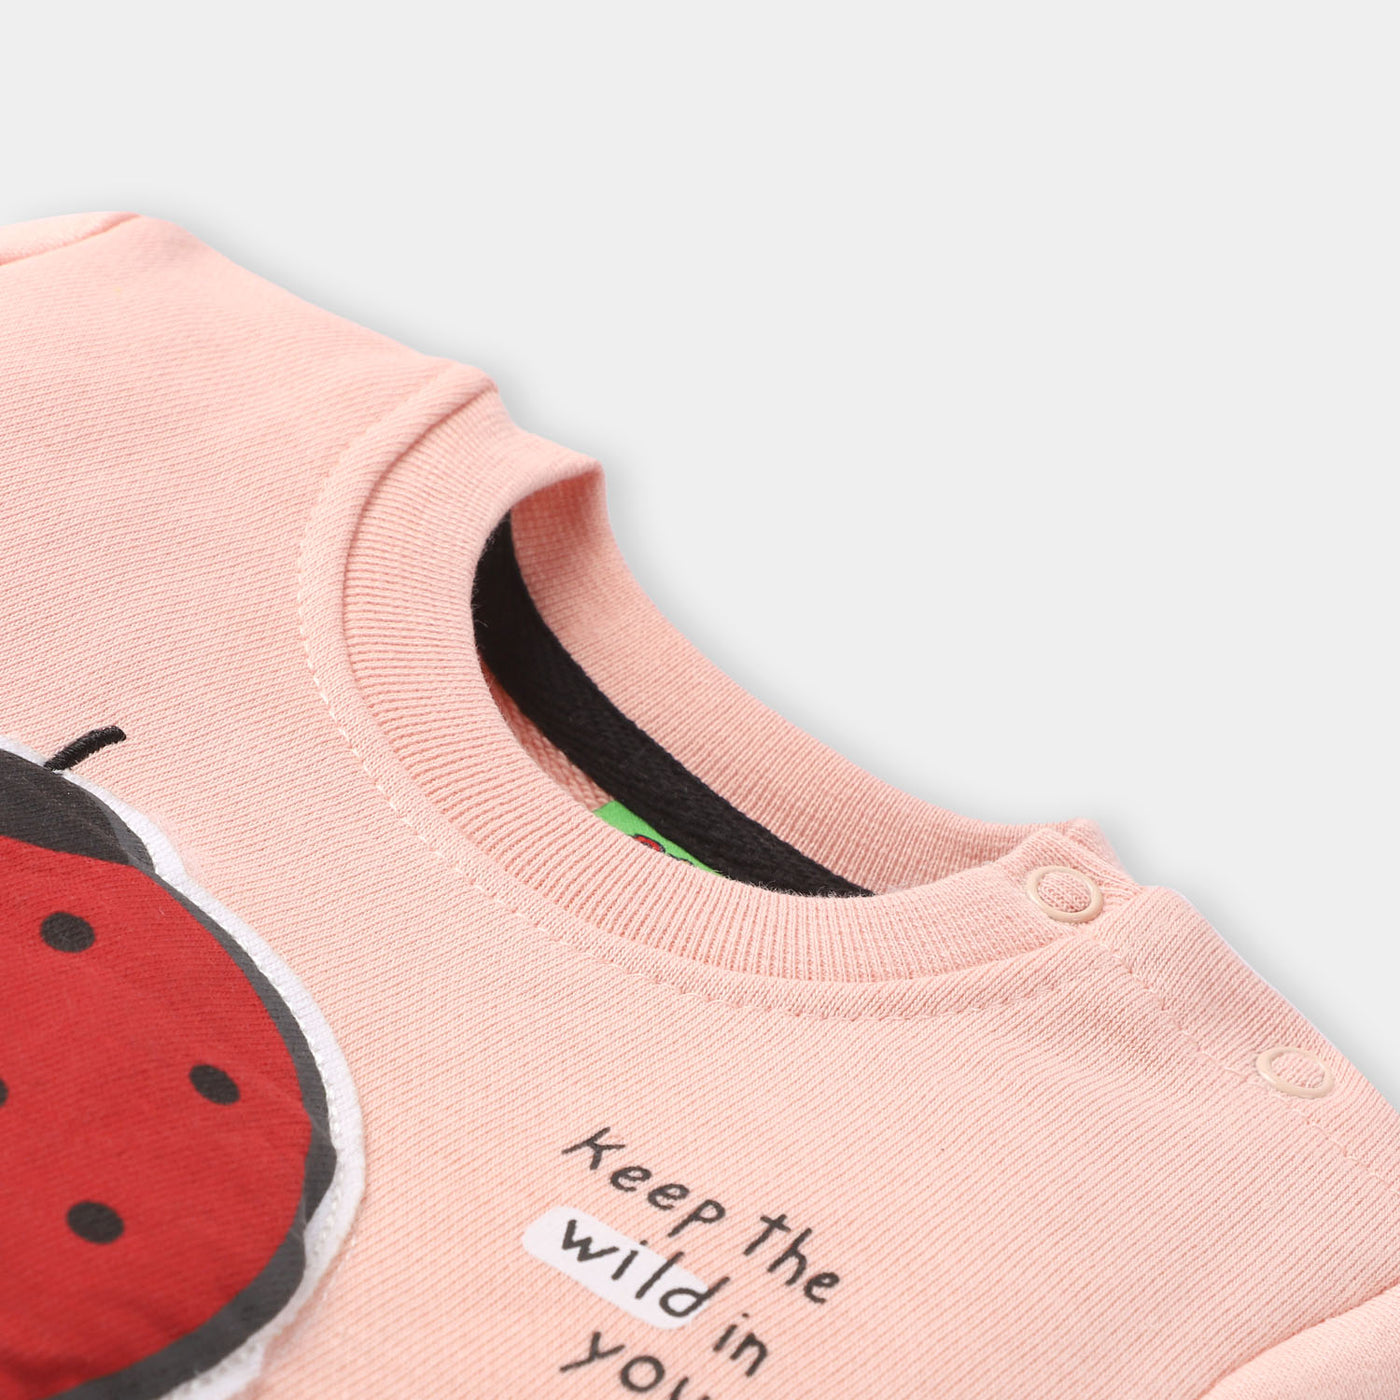 Infants Fleece Girls Sweatshirt Ladybug-Pink